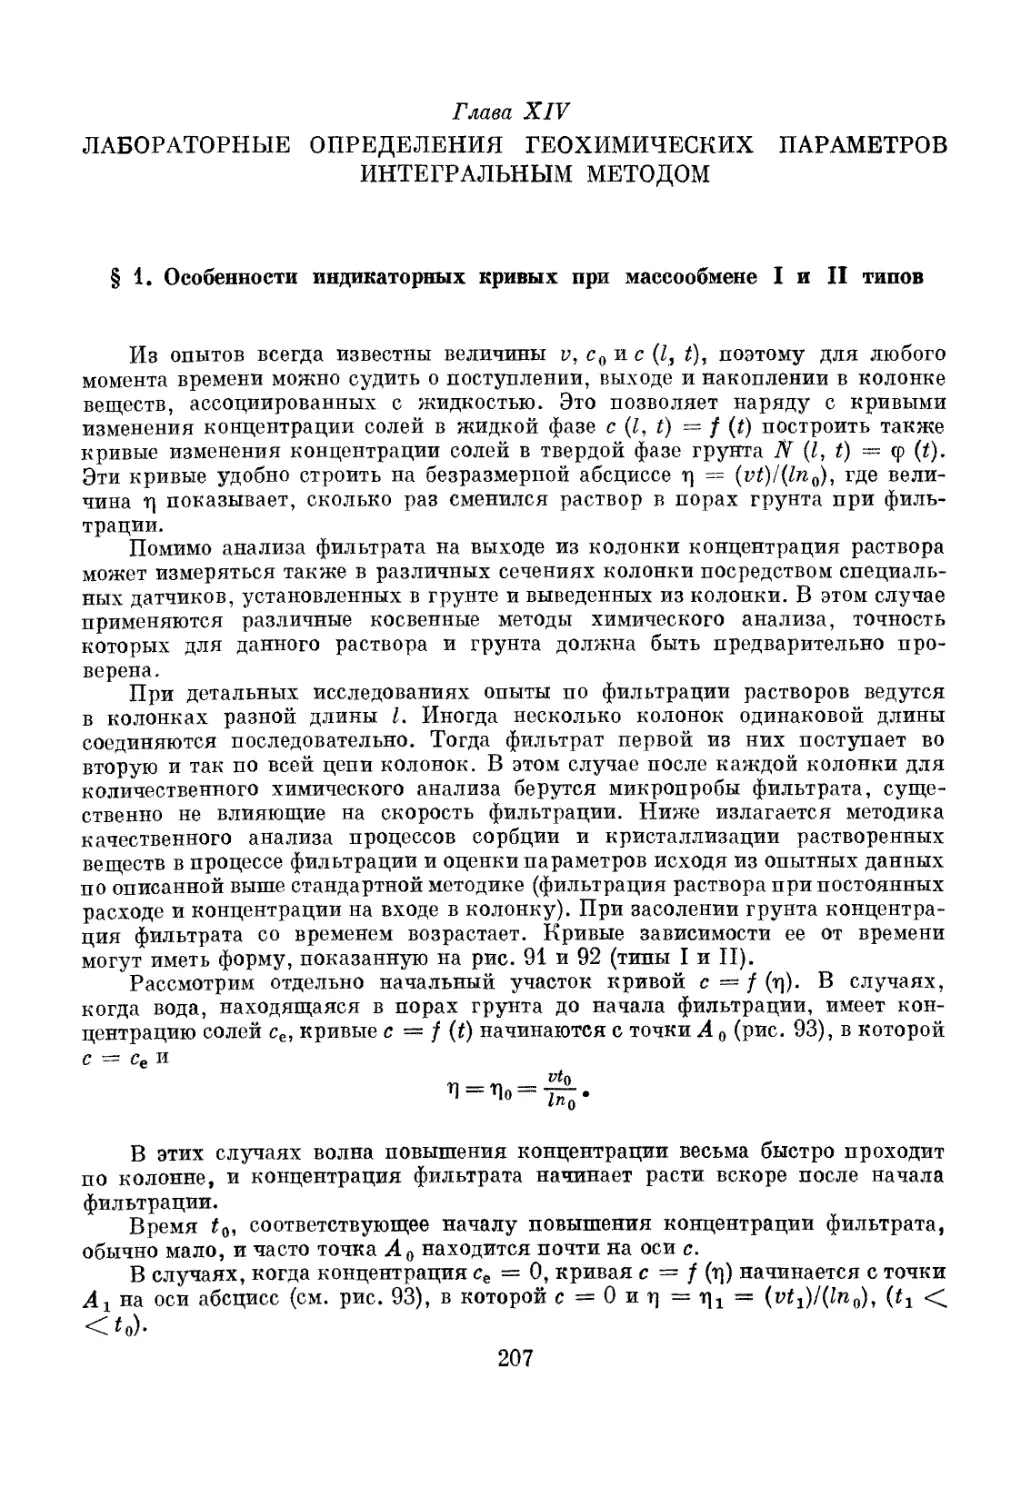 Глава XIV. Лабораторные определения геохимических параметров интегральным методом, 207